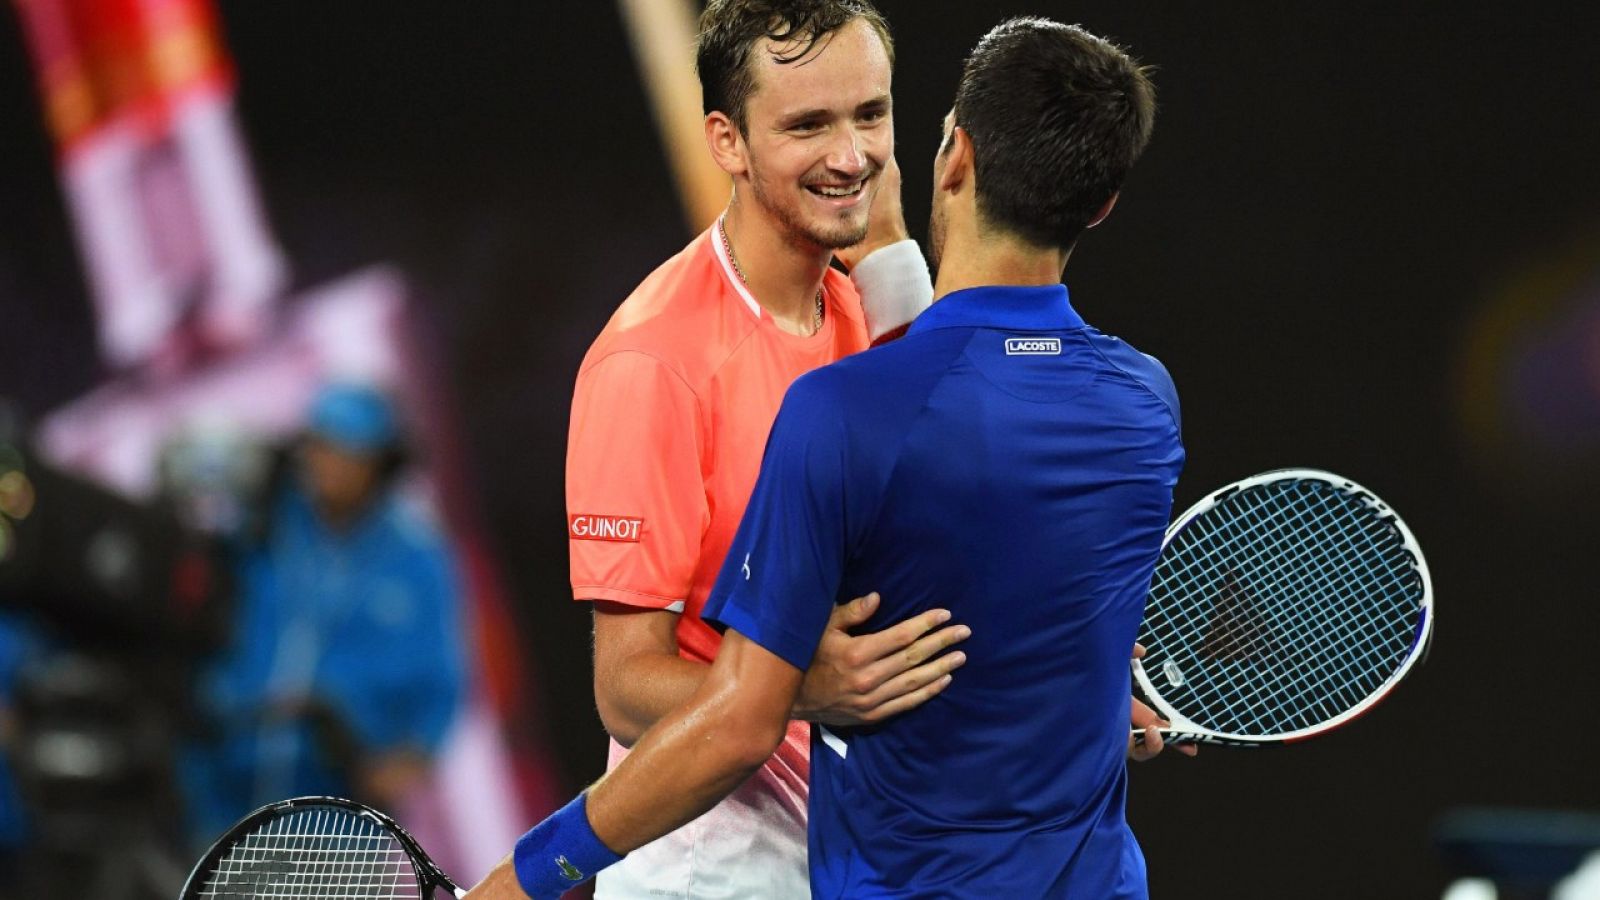 El tenista serbio Novak Djokovic celebra su victoria ante el ruso Daniil Medvedev durante el pasado Abierto de Australia en 2019.